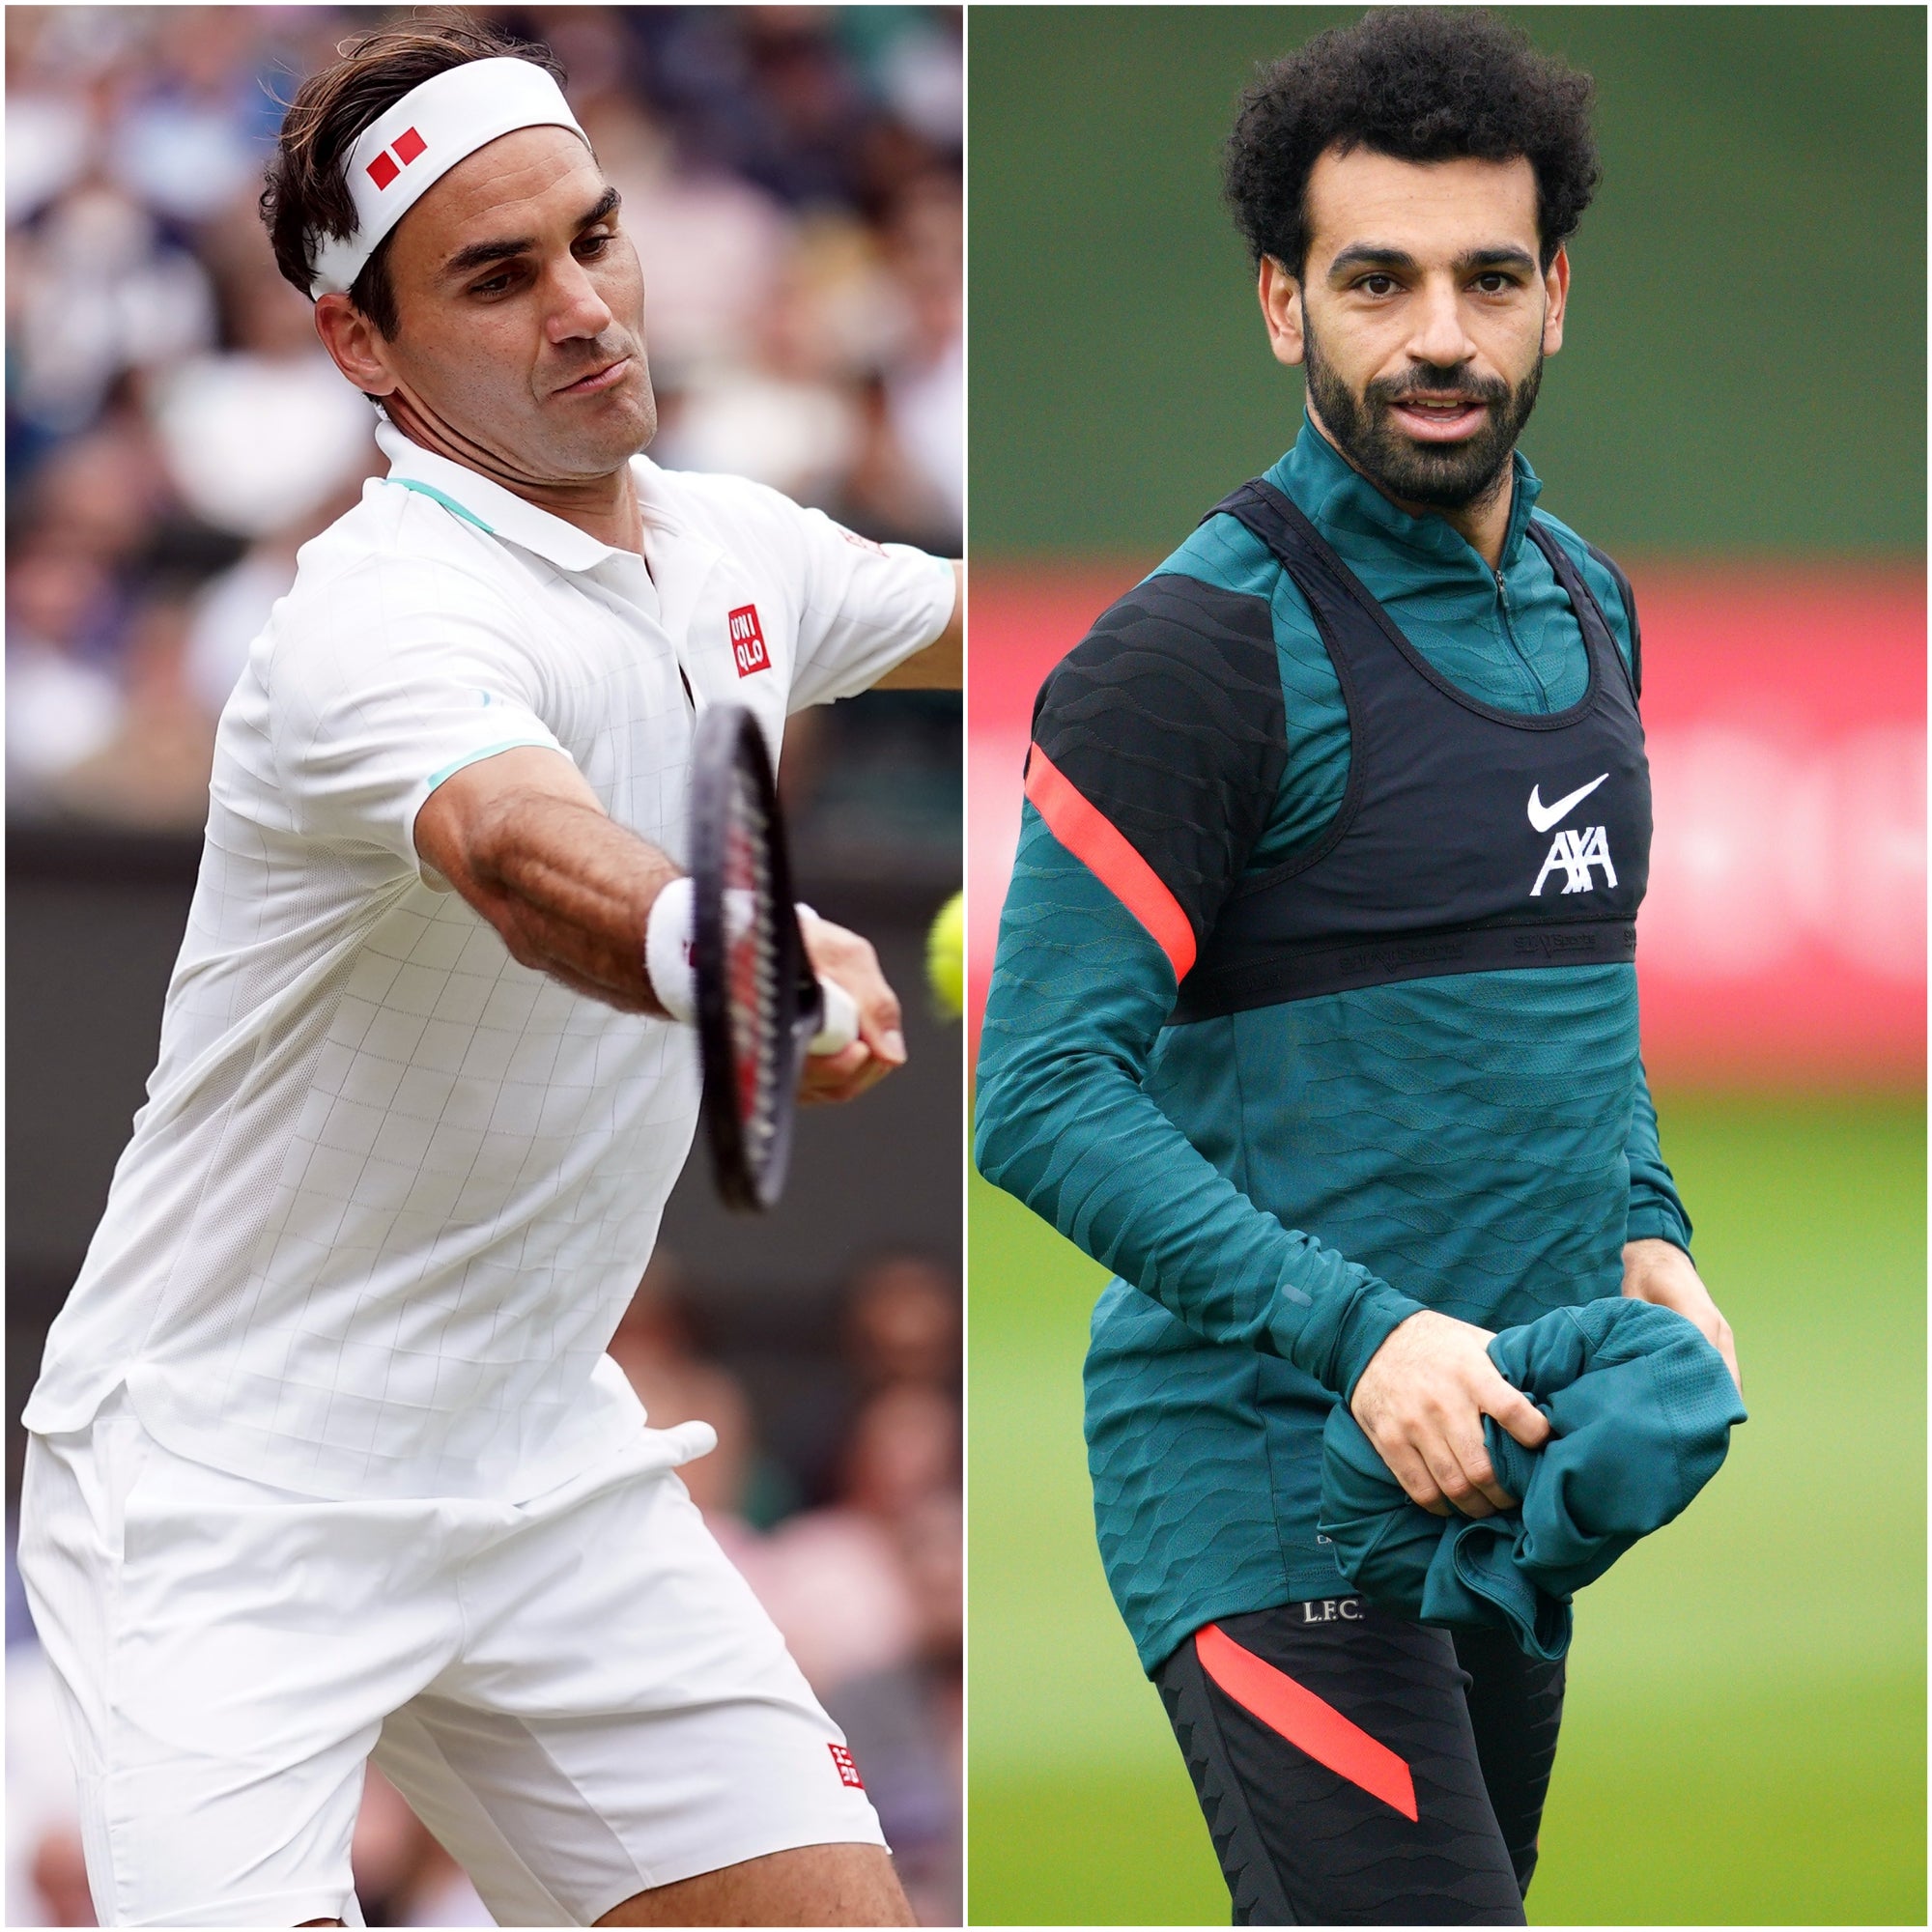 Roger Federer and Mohamed Salah (Adam Davy/Peter Byrne/PA)